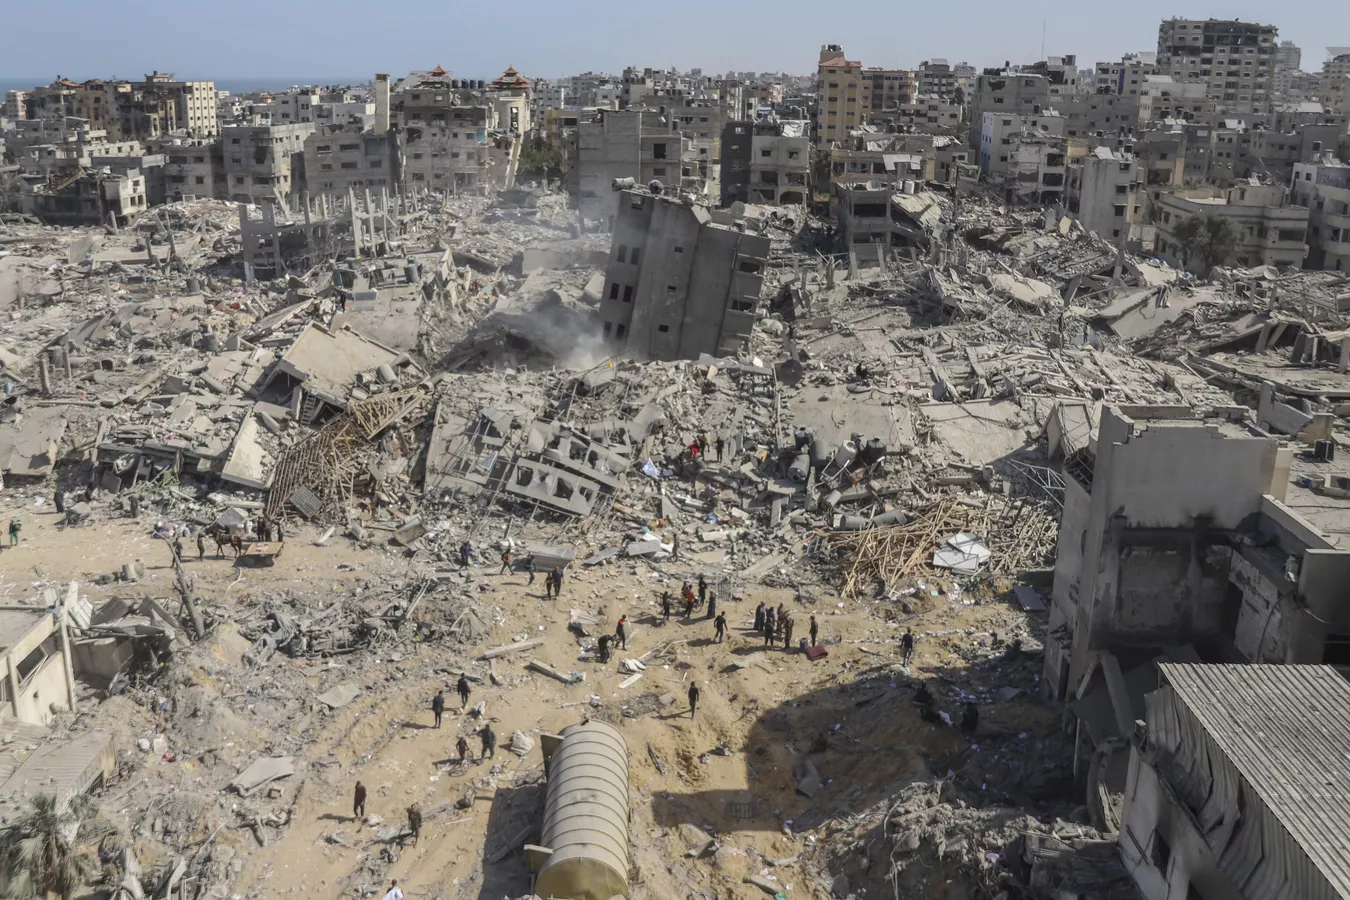  Naciones Unidas no descarta crímenes contra la humanidad en Gaza